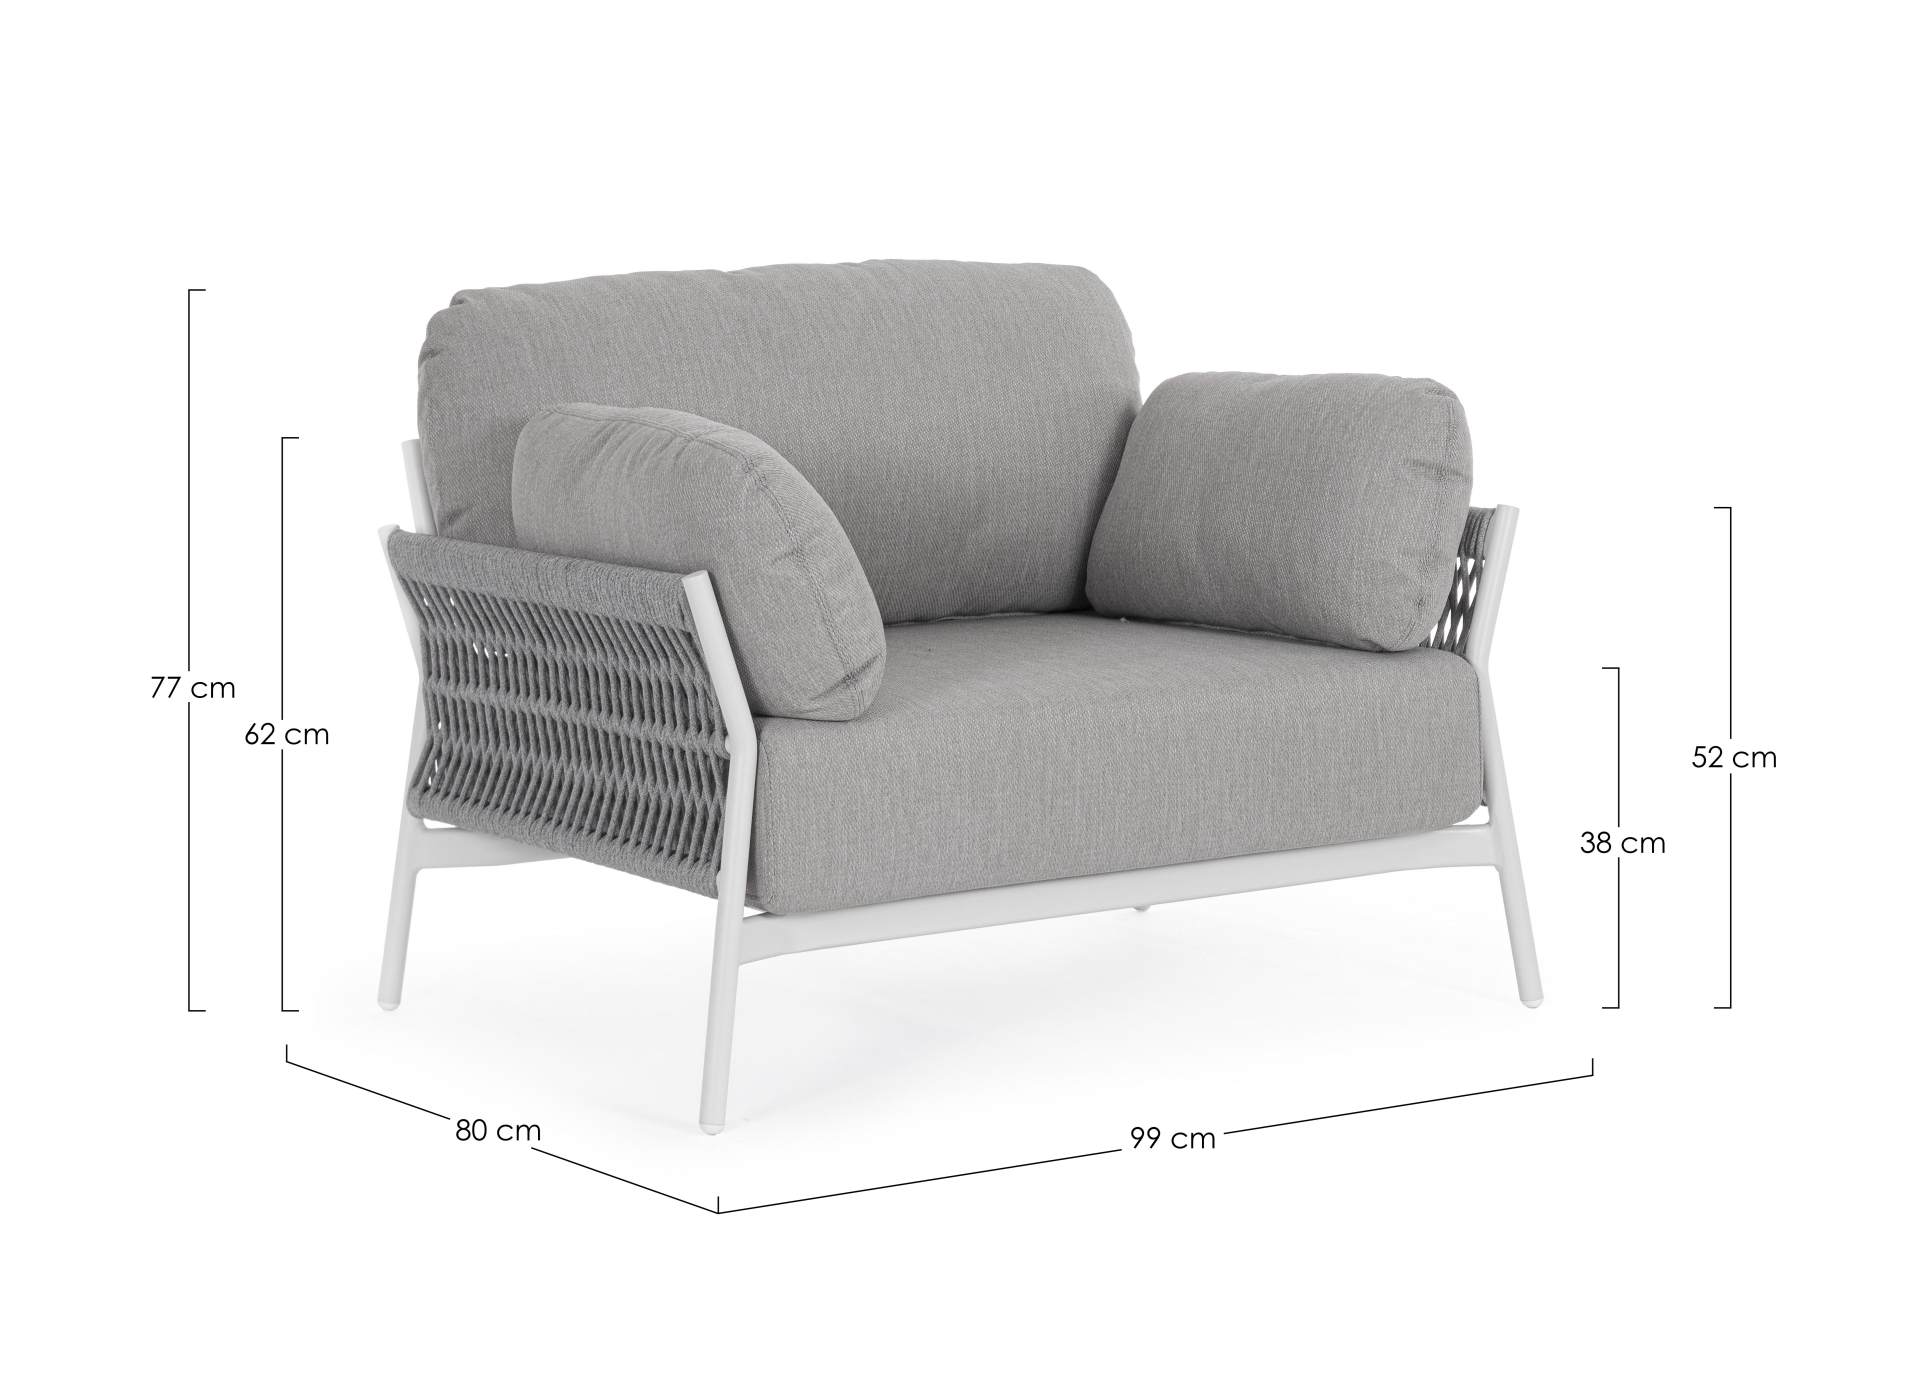 Der Gartensessel Pardis überzeugt mit seinem modernen Design. Gefertigt wurde er aus Olefin-Stoff, welcher einen grauen Farbton besitzt. Das Gestell ist aus Aluminium und hat eine weiße Farbe. Der Sessel verfügt über eine Sitzhöhe von 38 cm und ist für de